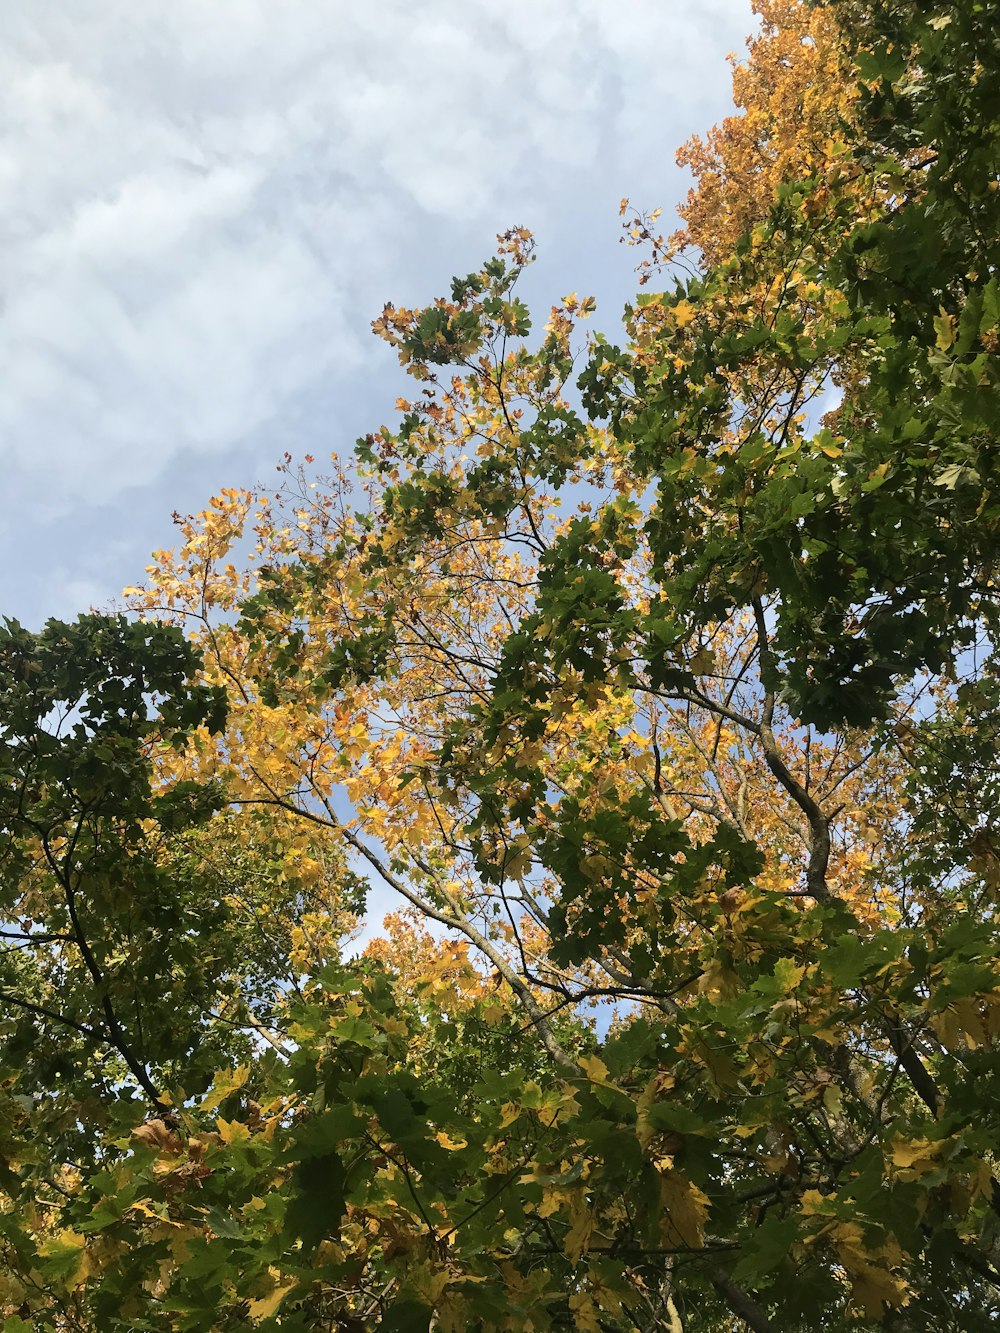 albero di foglia verde e gialla sotto nuvole bianche e cielo blu durante il giorno